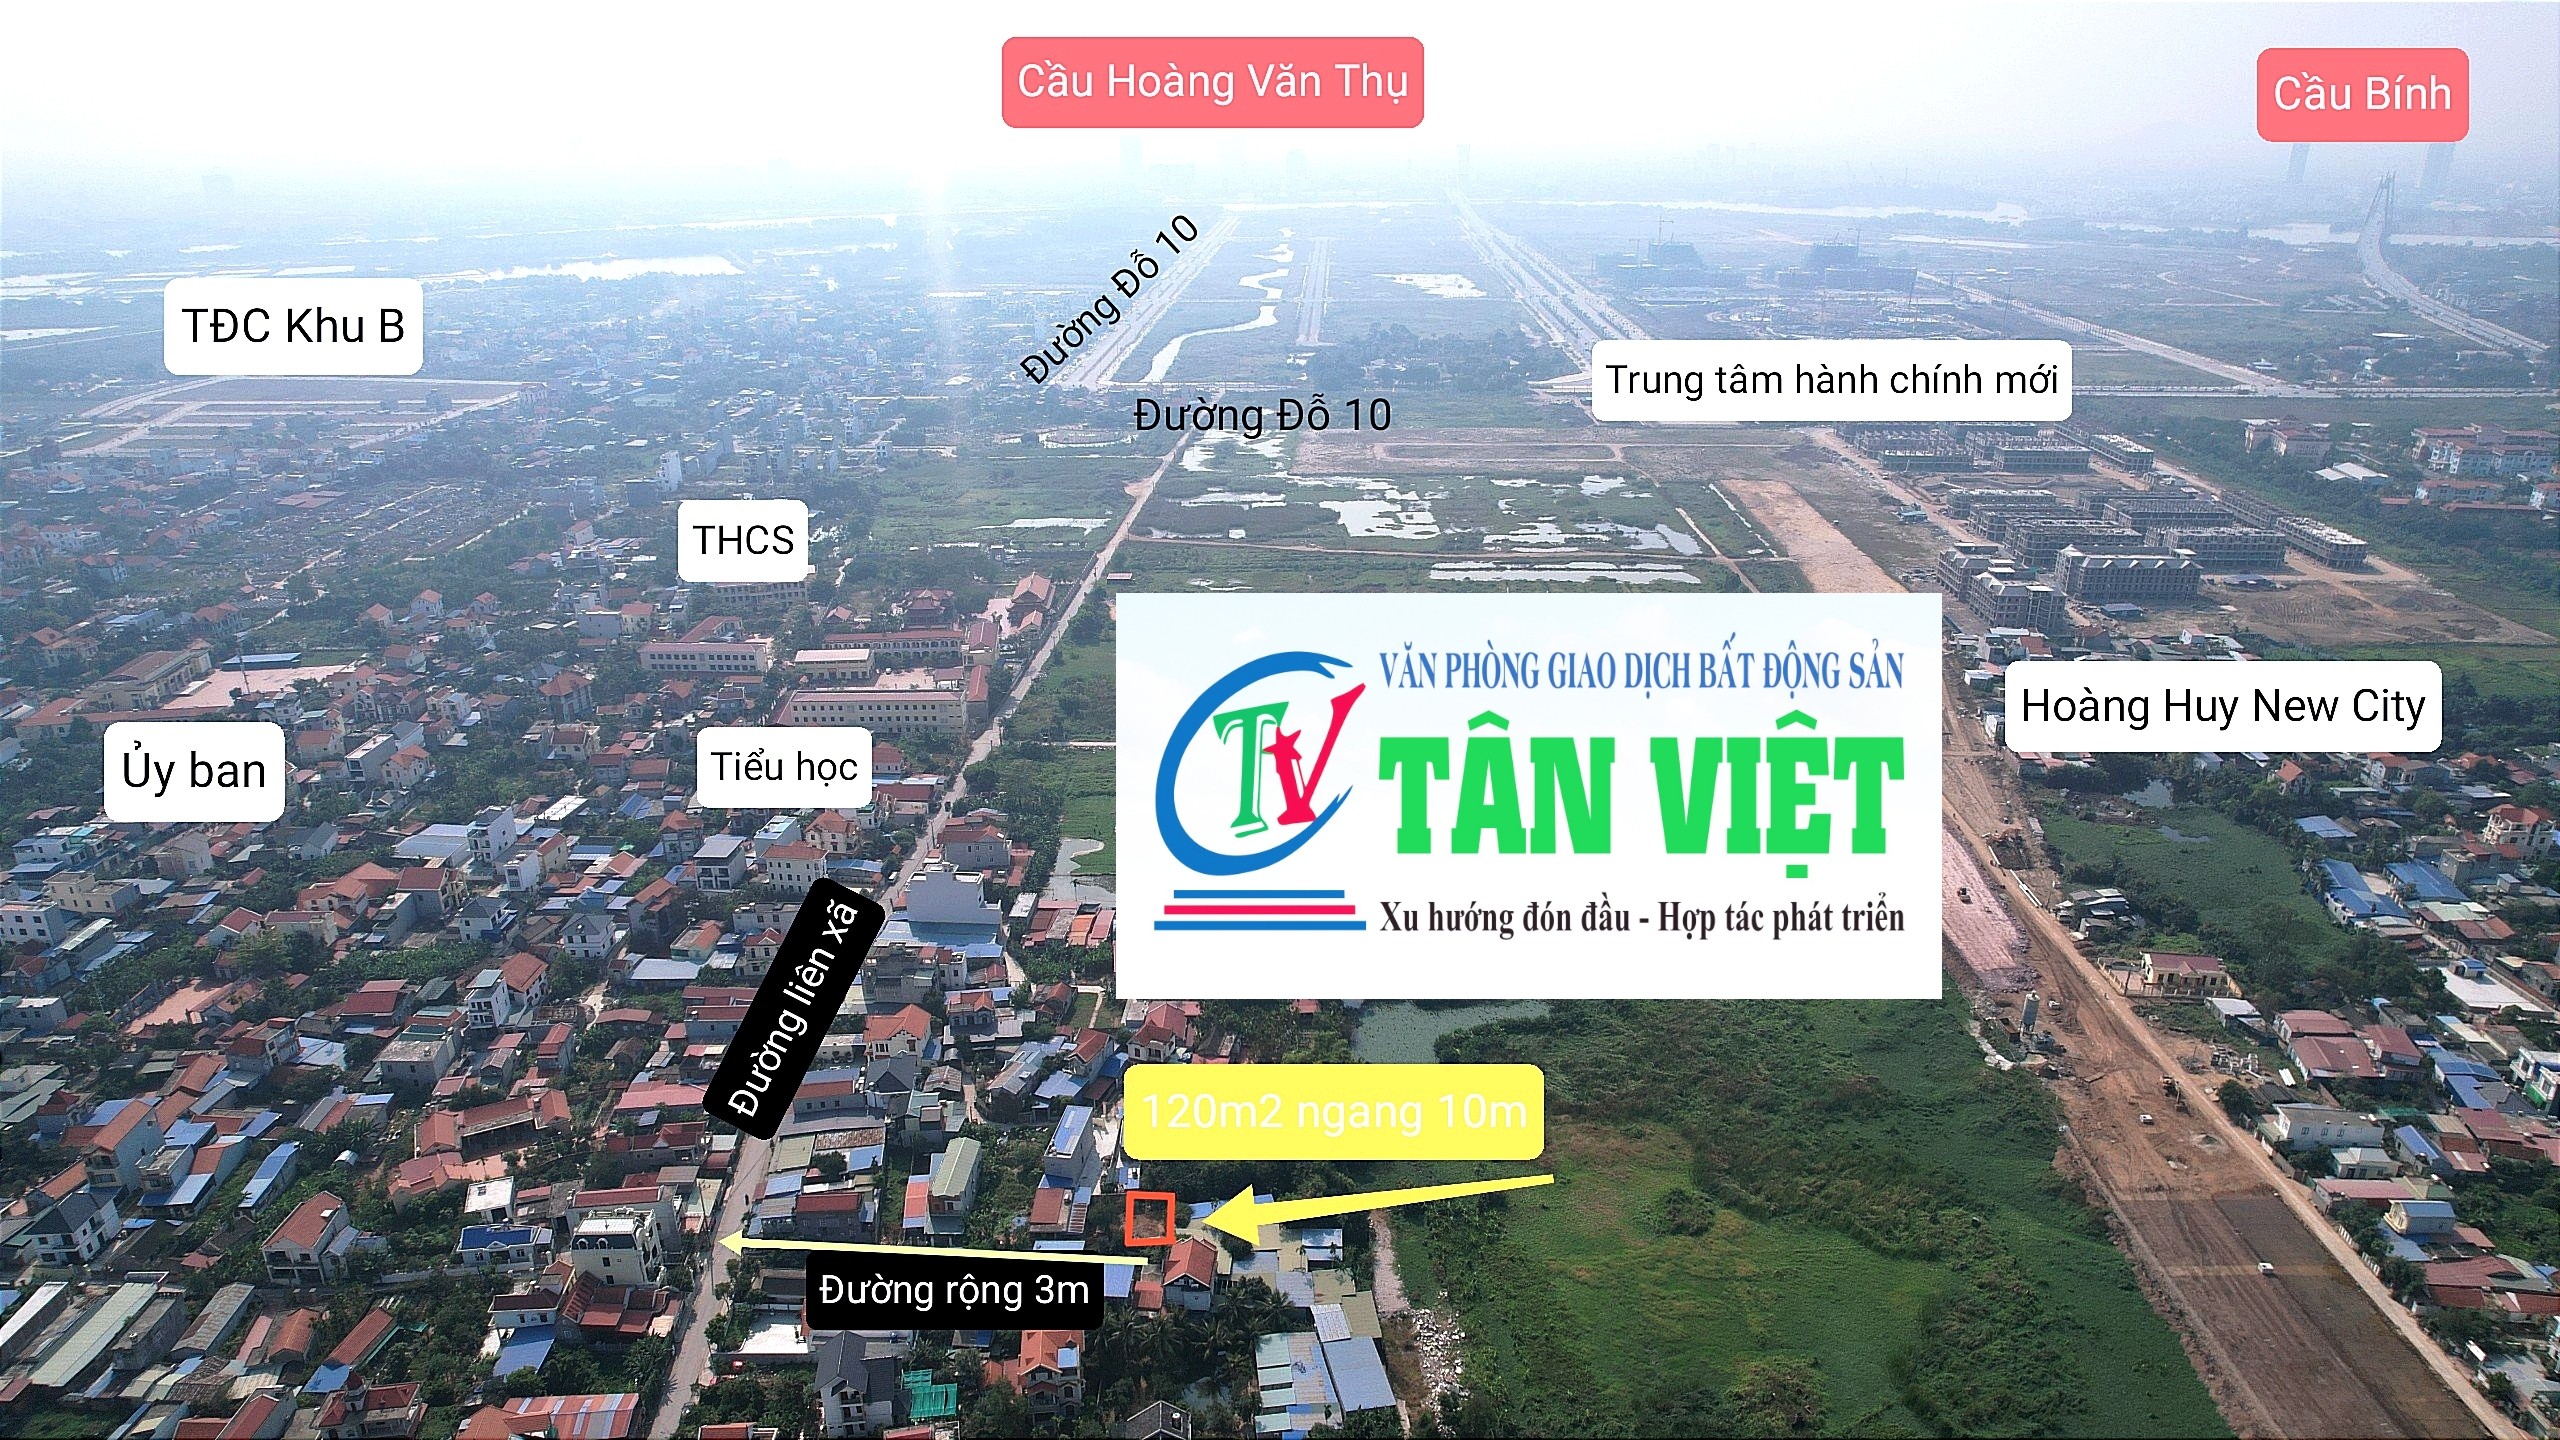 Bán lô đất cạnh VSIP, gần trung tâm hành chính, Dương Quan, Thủy Nguyên, Hải Phòng